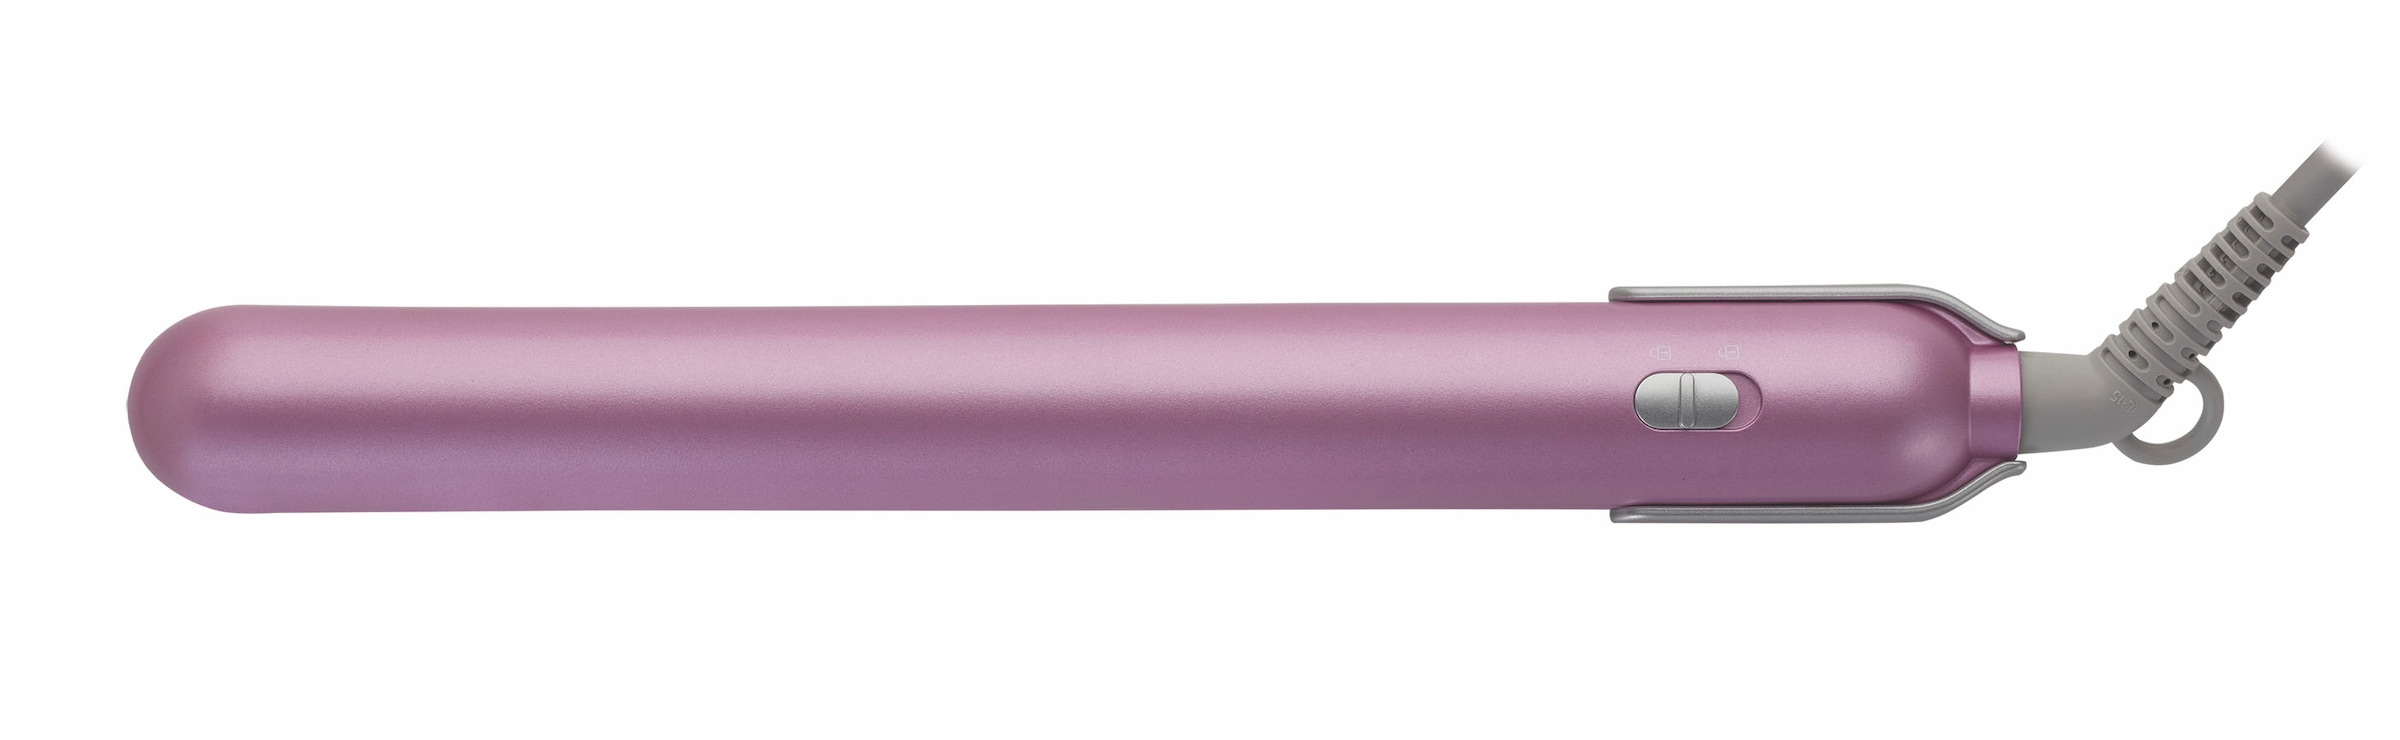 7130«, Pink Lotusöl Keramikbeschichtung bei Glätteisen Grundig OTTO mit »HS